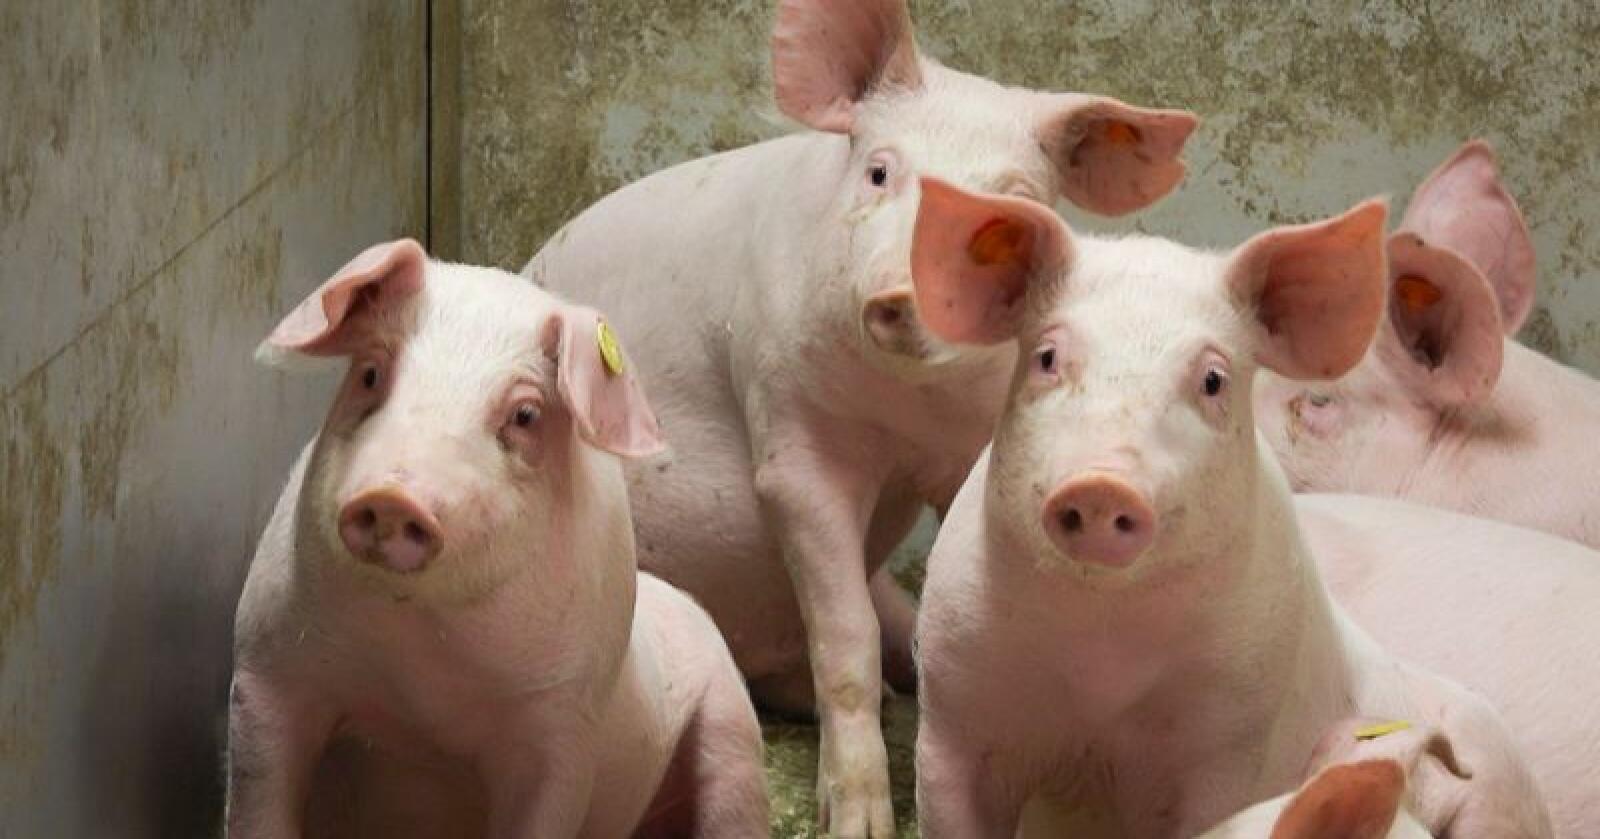 Debatten om hvordan det egentlig står til med dyrevelferden i norsk svineproduksjon, har blusset opp igjen. Grisene på bildet har ikke noe med den nye NOAH-filmen å gjøre. Illustrasjonsfoto: Hallfrid Simonsen